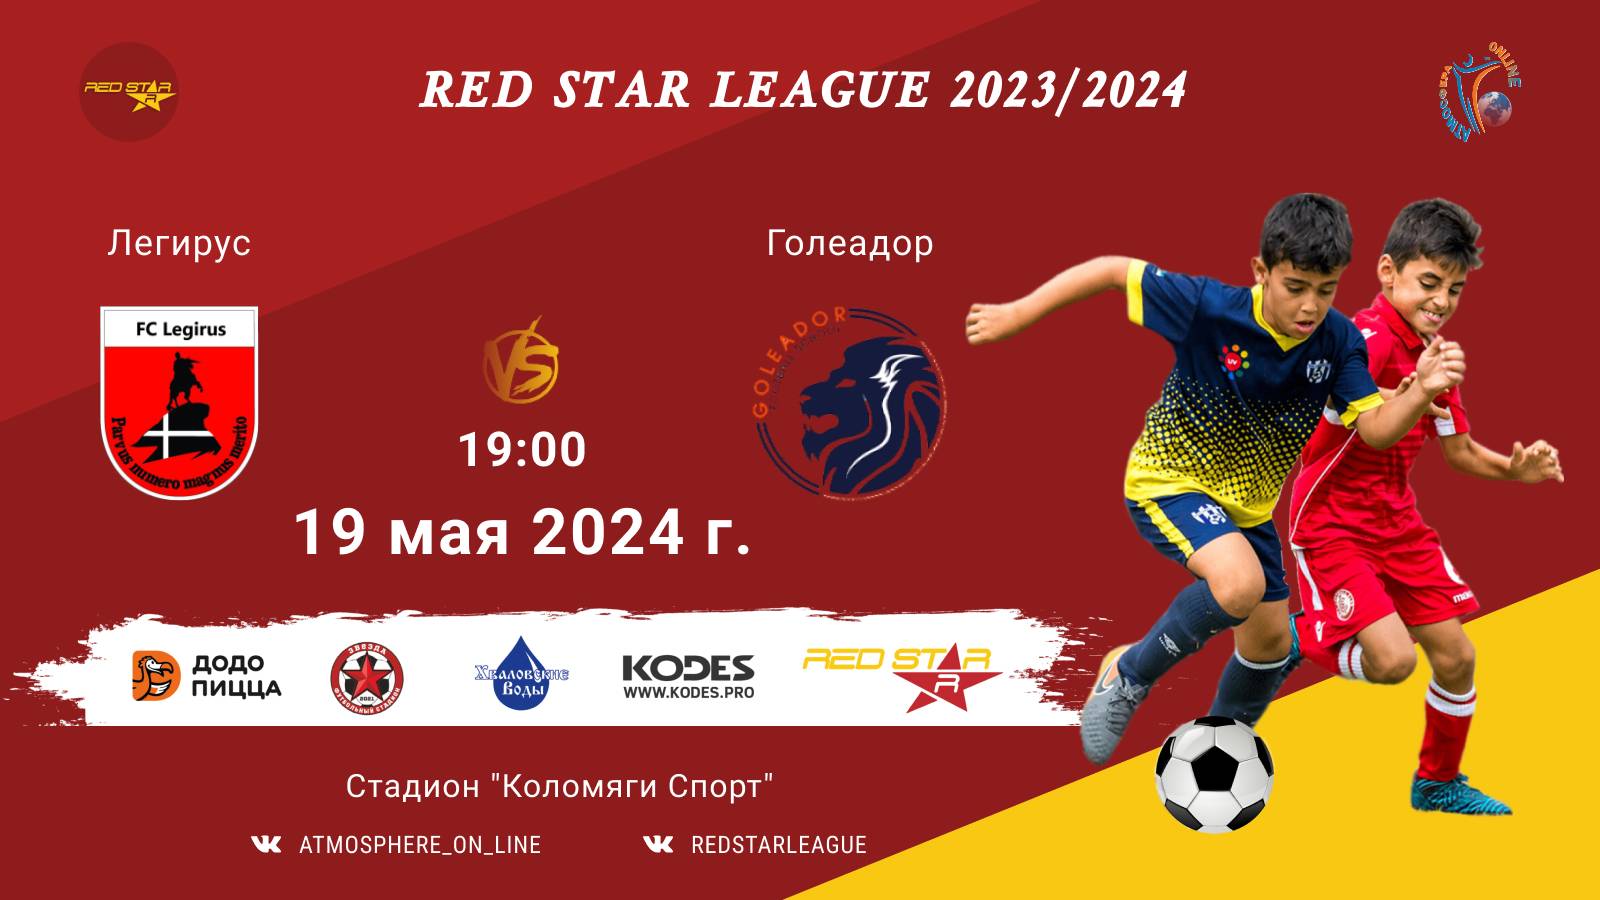 ФК "Легирус" - ФК "Голеадор"/Red Star League, 19-05-2024 19:00